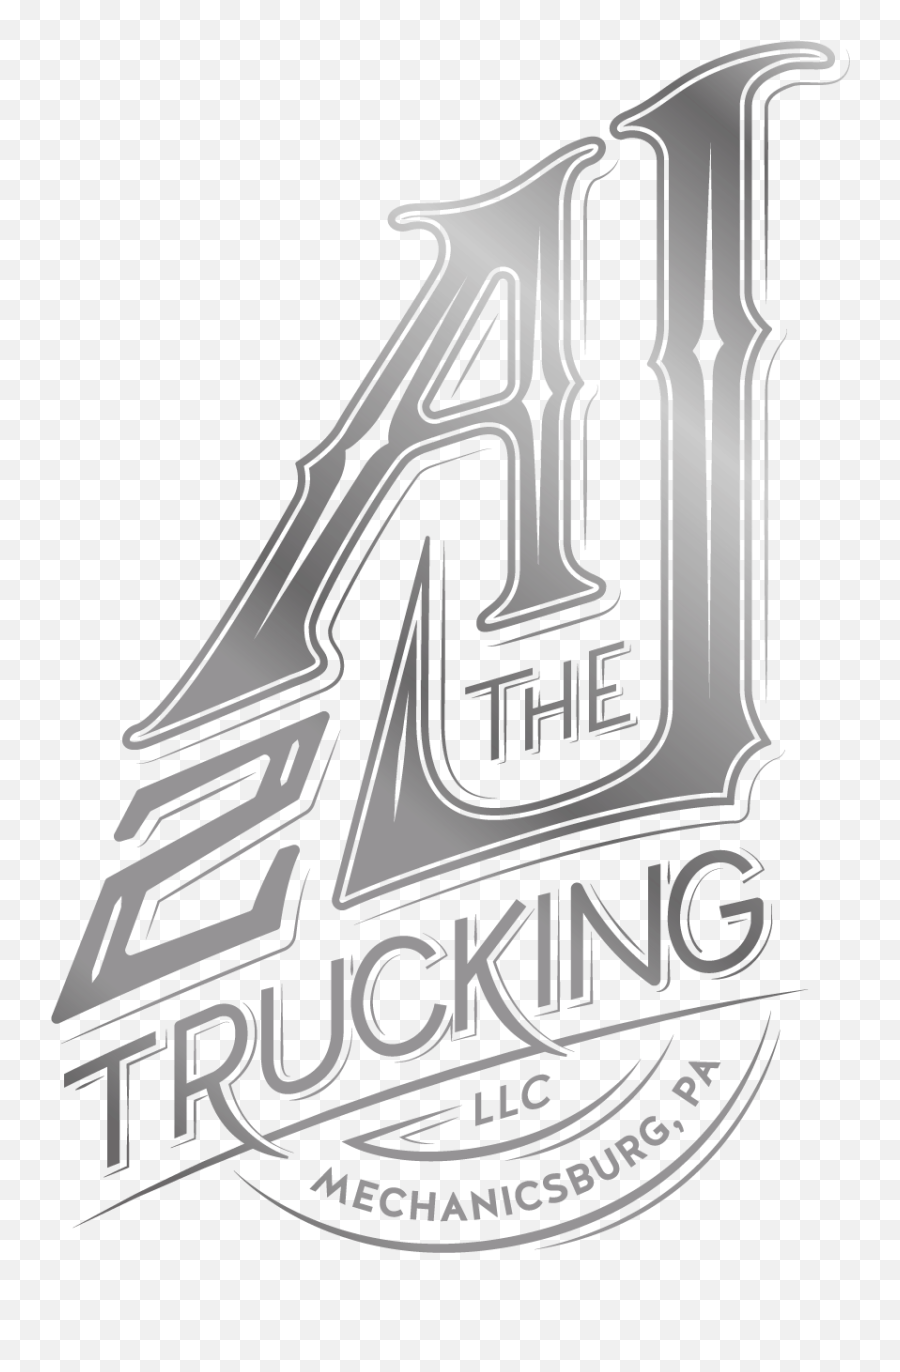 A 2 The J Trucking - Language Emoji,Trucking Logos